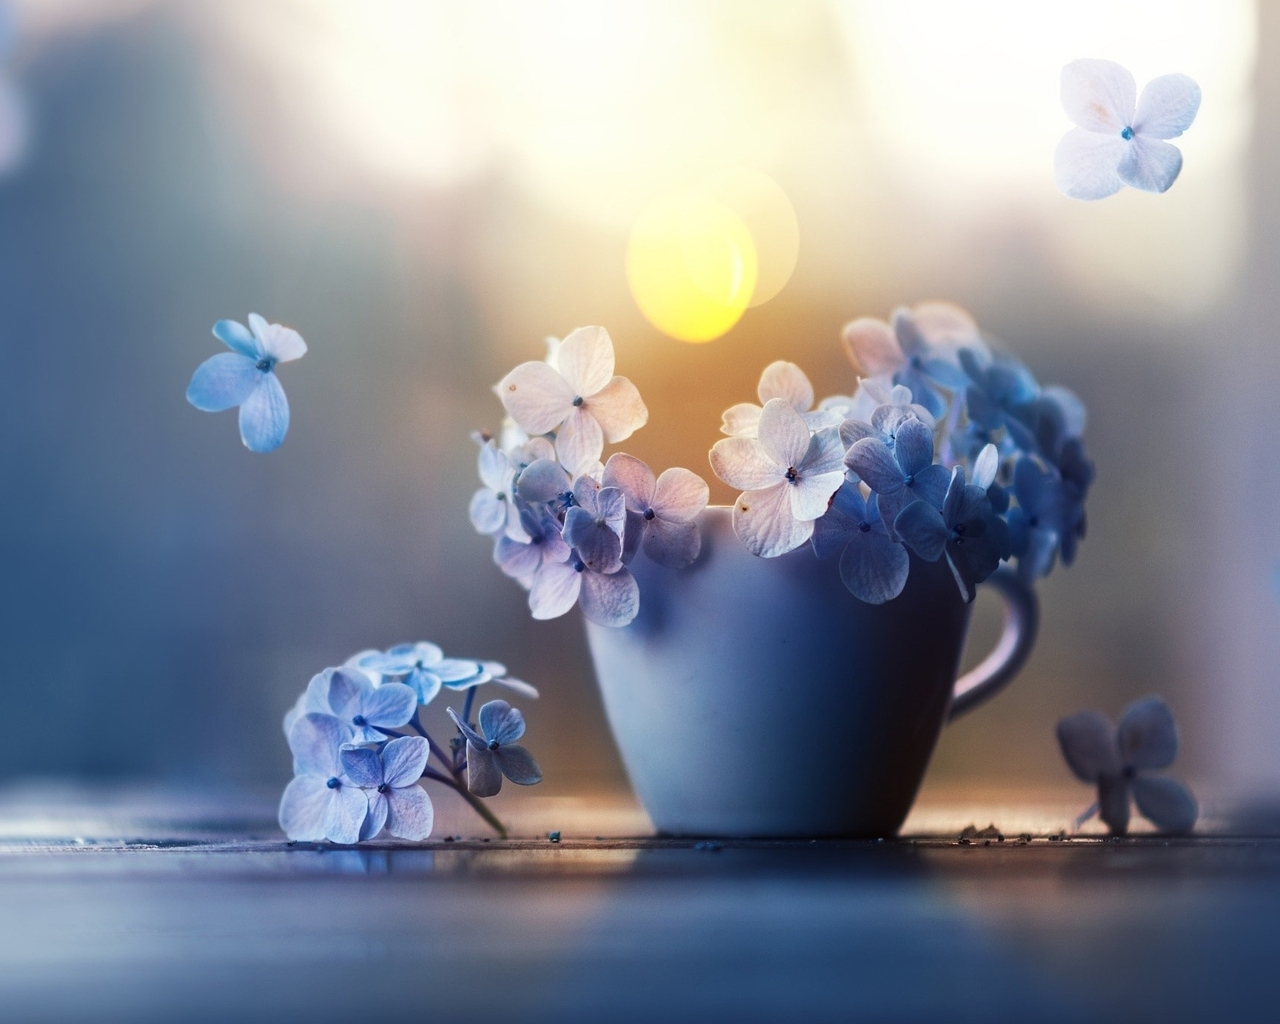 Image: Hydrangea, petals, mug, highlights